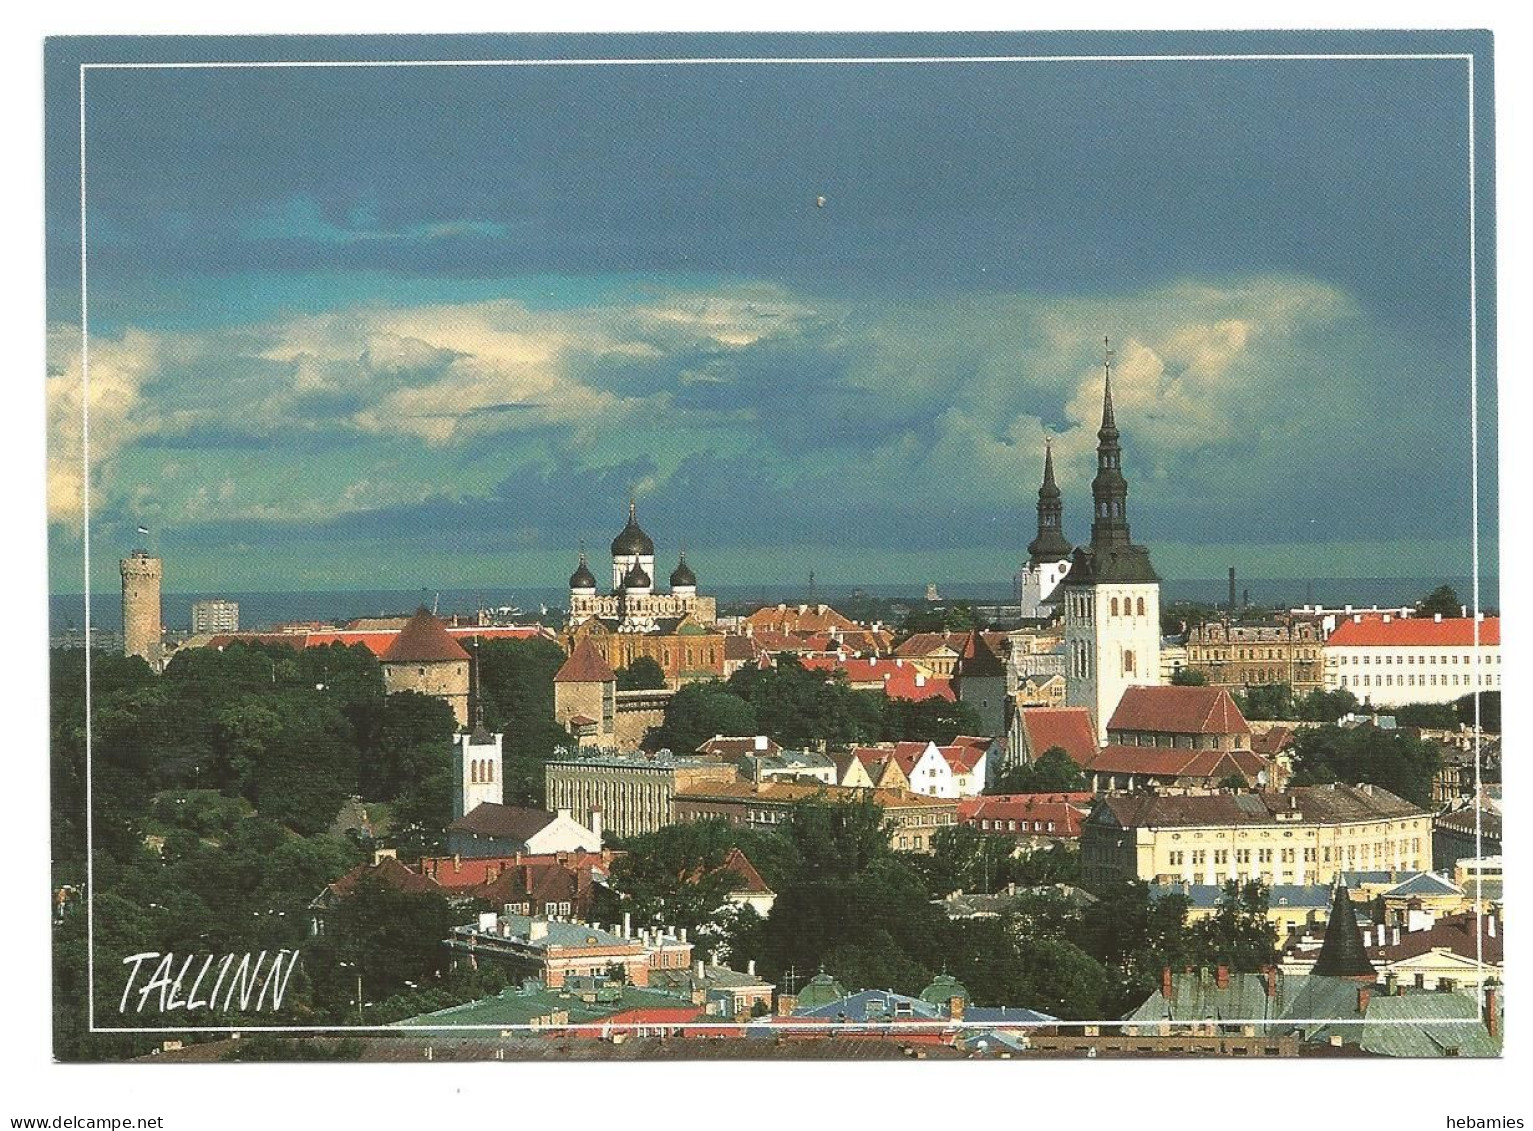 TALLINN - OLD TOWN - VANALINN - ESTONIA - EESTI - - Estonie